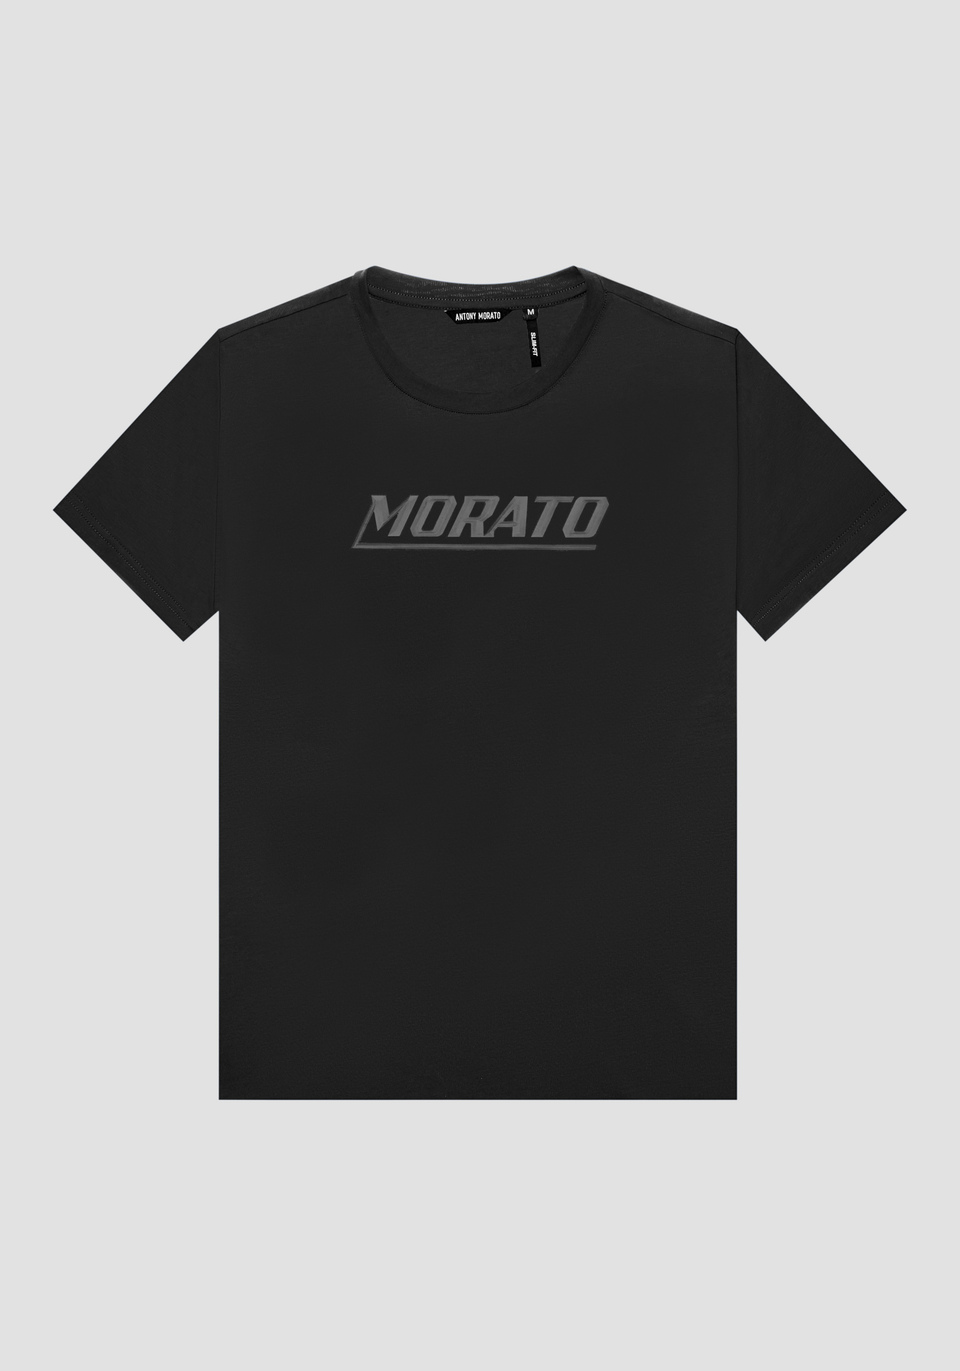 T-SHIRT SLIM FIT IN PURO COTONE CON STAMPA “MORATO” - Antony Morato Online Shop